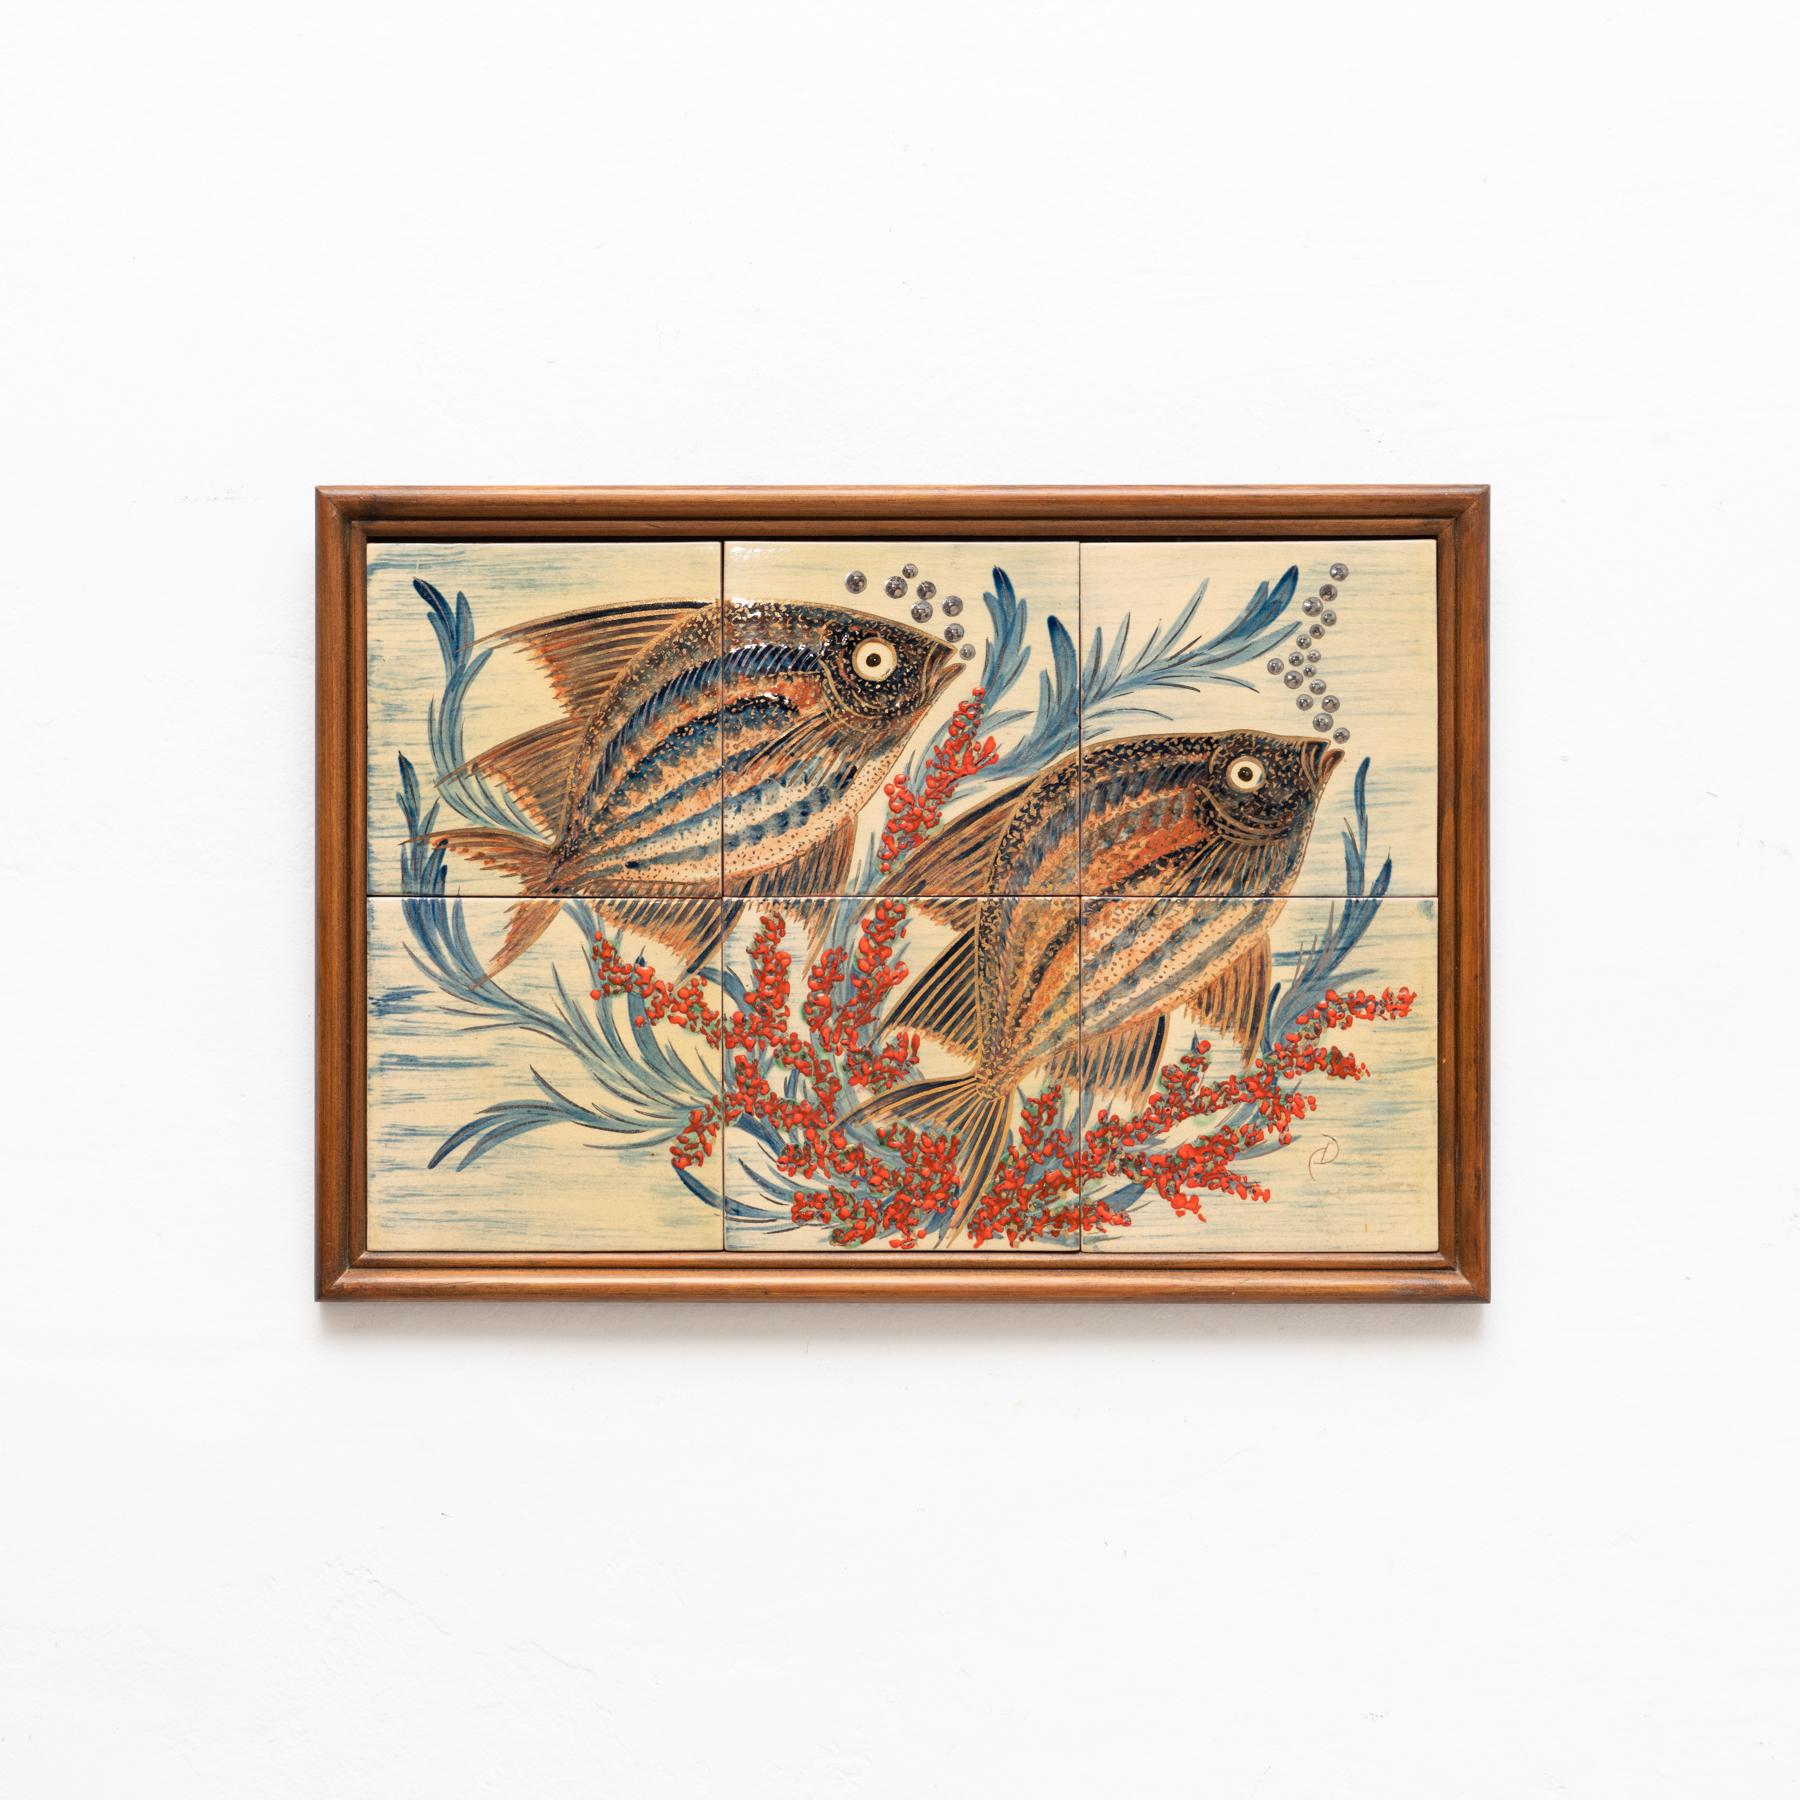 Keramisches, handbemaltes Kunstwerk von zwei Fischen des katalanischen Künstlers Diaz Costa, um 1960.
Gerahmt. Unterschrieben.

Im Originalzustand, mit geringfügigen Gebrauchsspuren, die dem Alter und dem Gebrauch entsprechen, wobei eine schöne